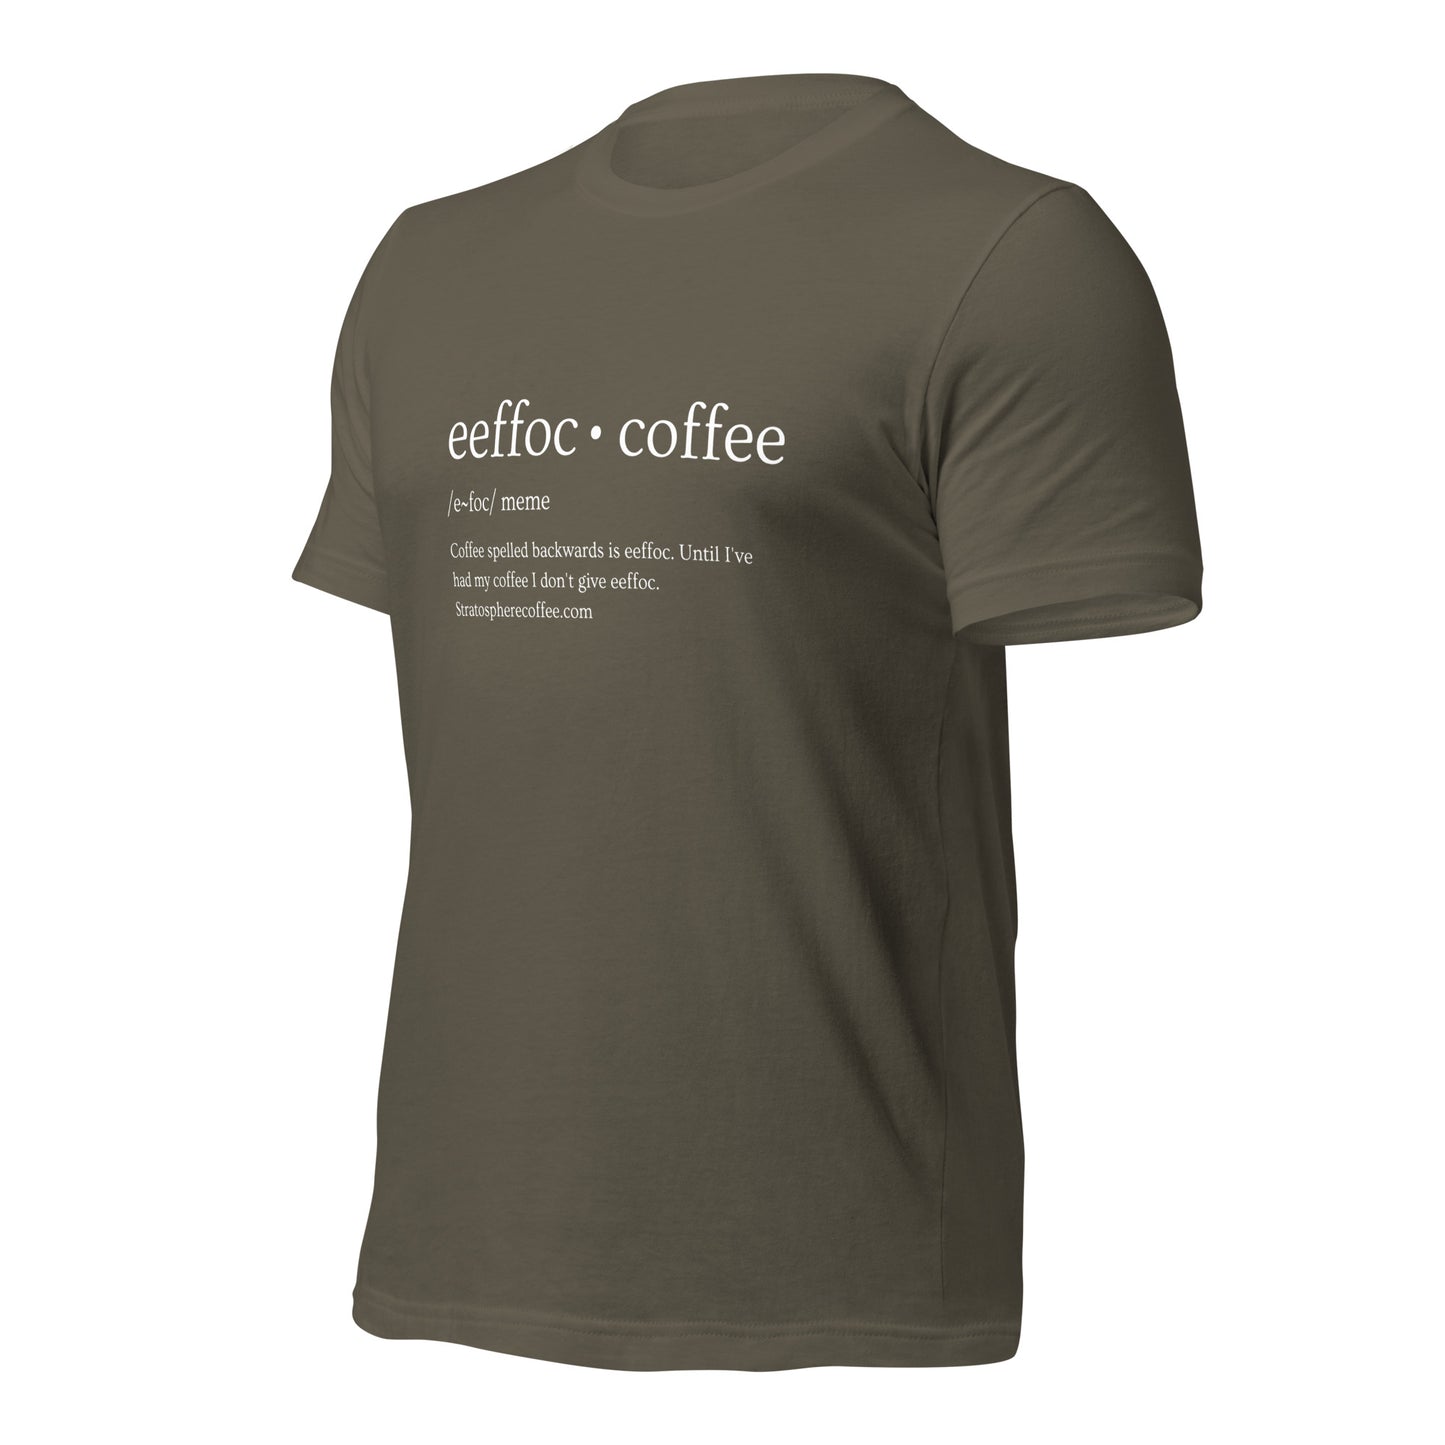 Eeffoc T-shirt